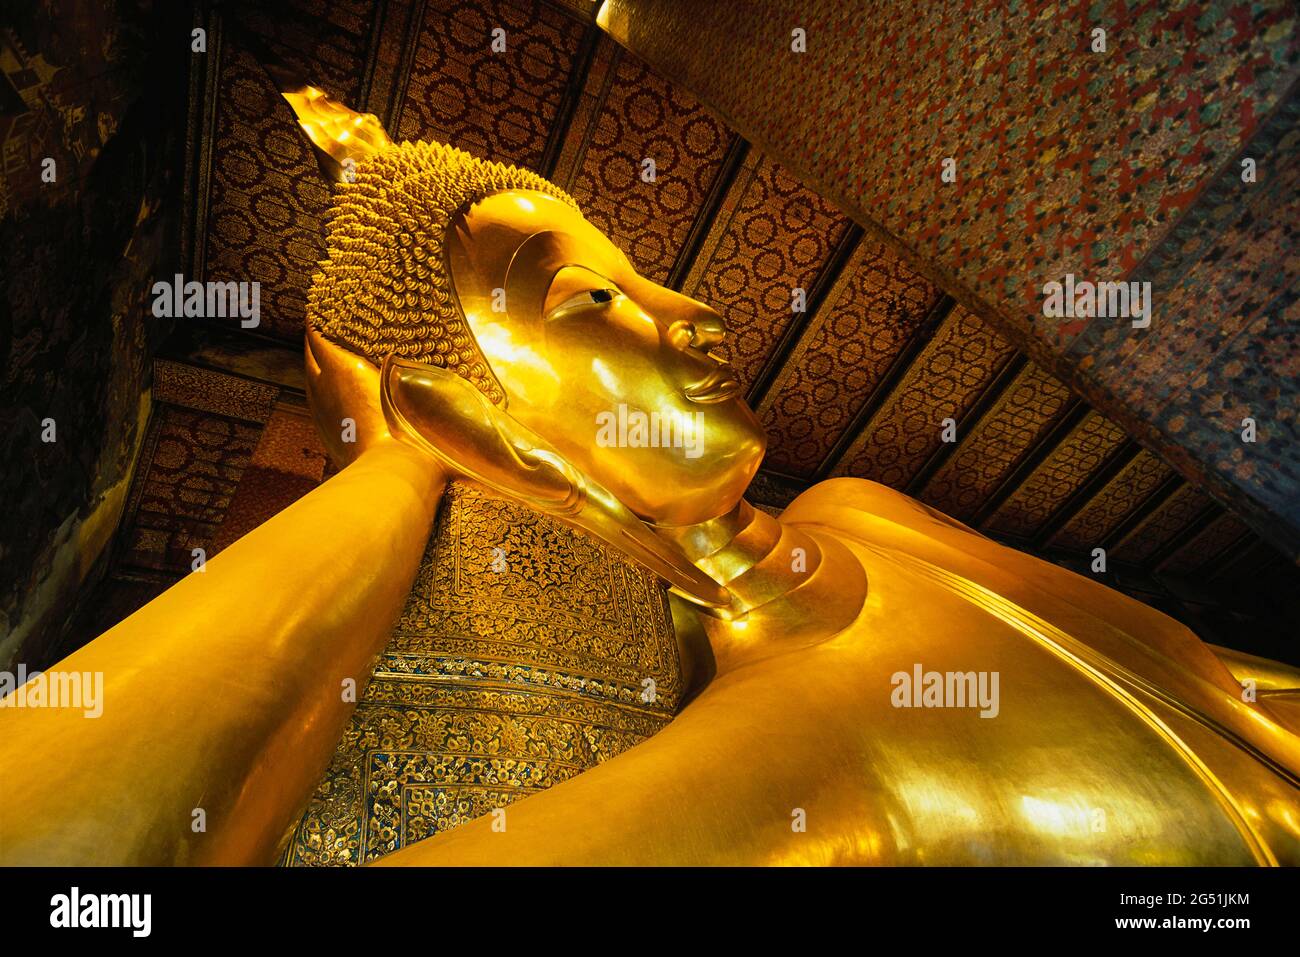 Buda reclinado en el templo de Wat Po, Bangkok, Tailandia, sudeste asiático Foto de stock